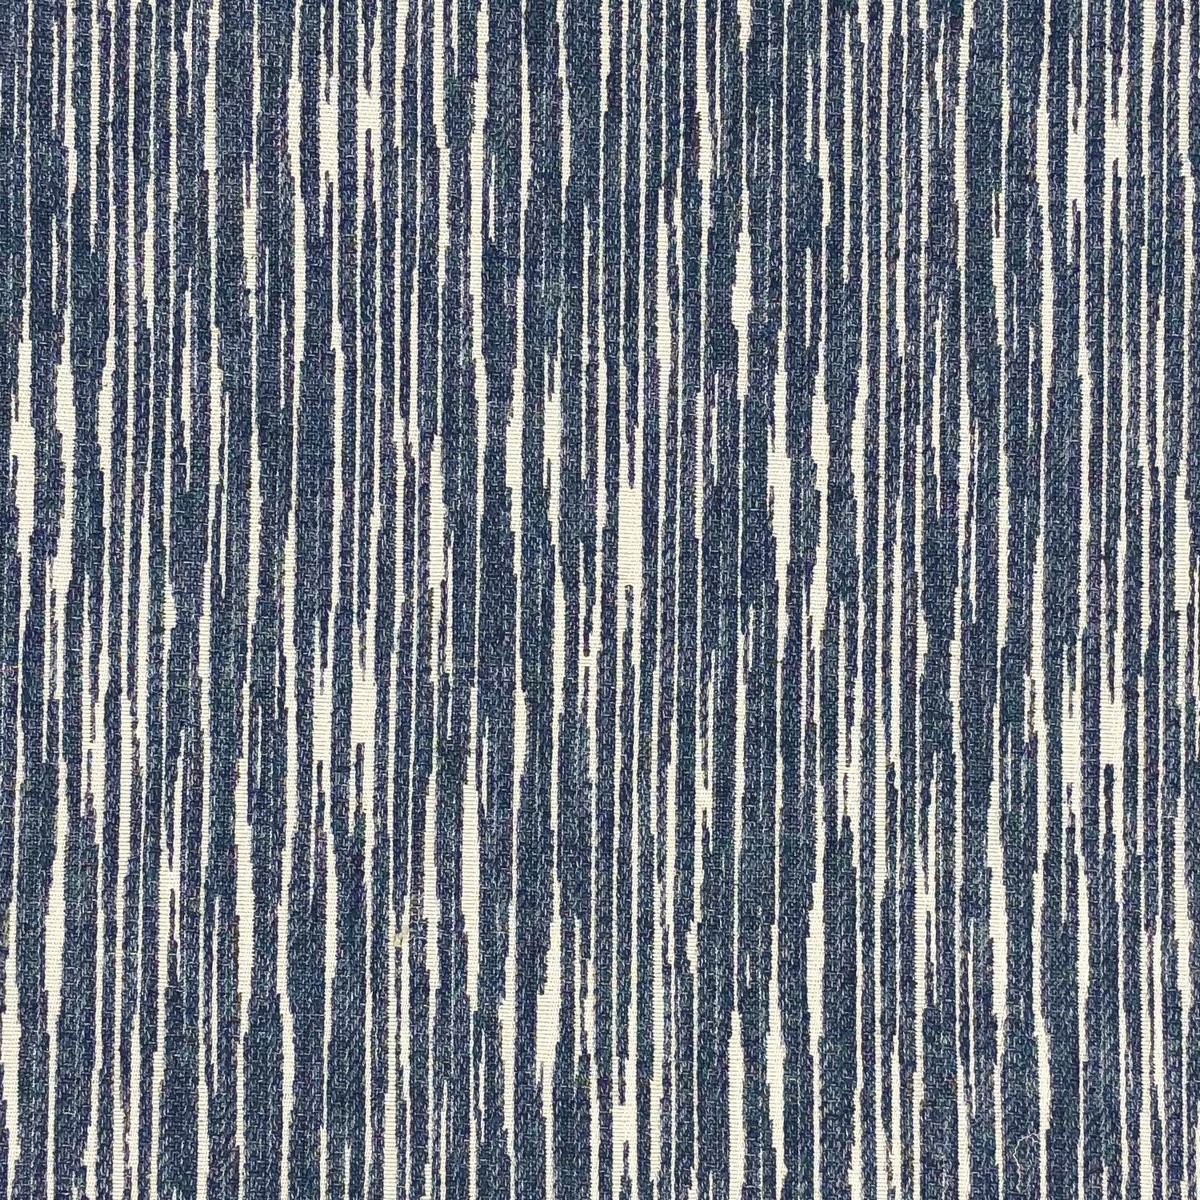 Paddington Denim Fabric by Chatham Glyn